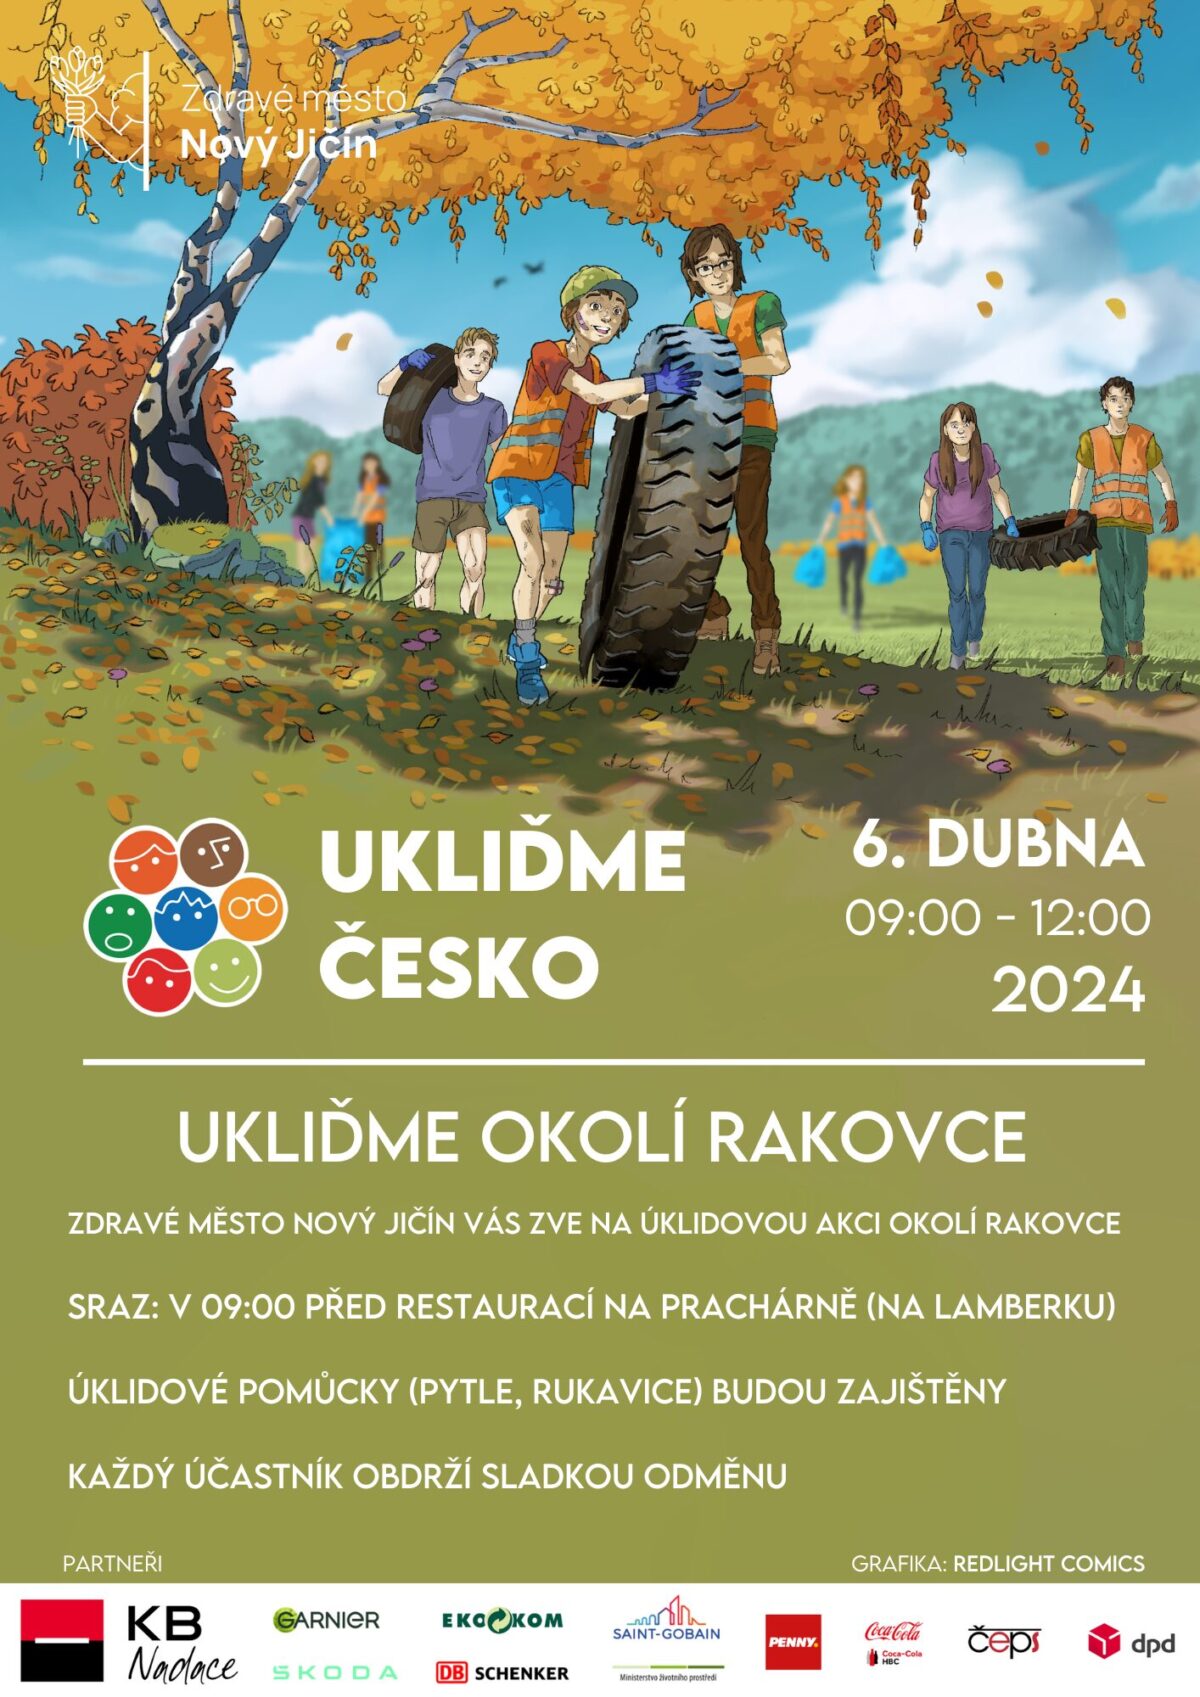 Plakát Ukliďme Česko, datum akce, místo a čas akce.